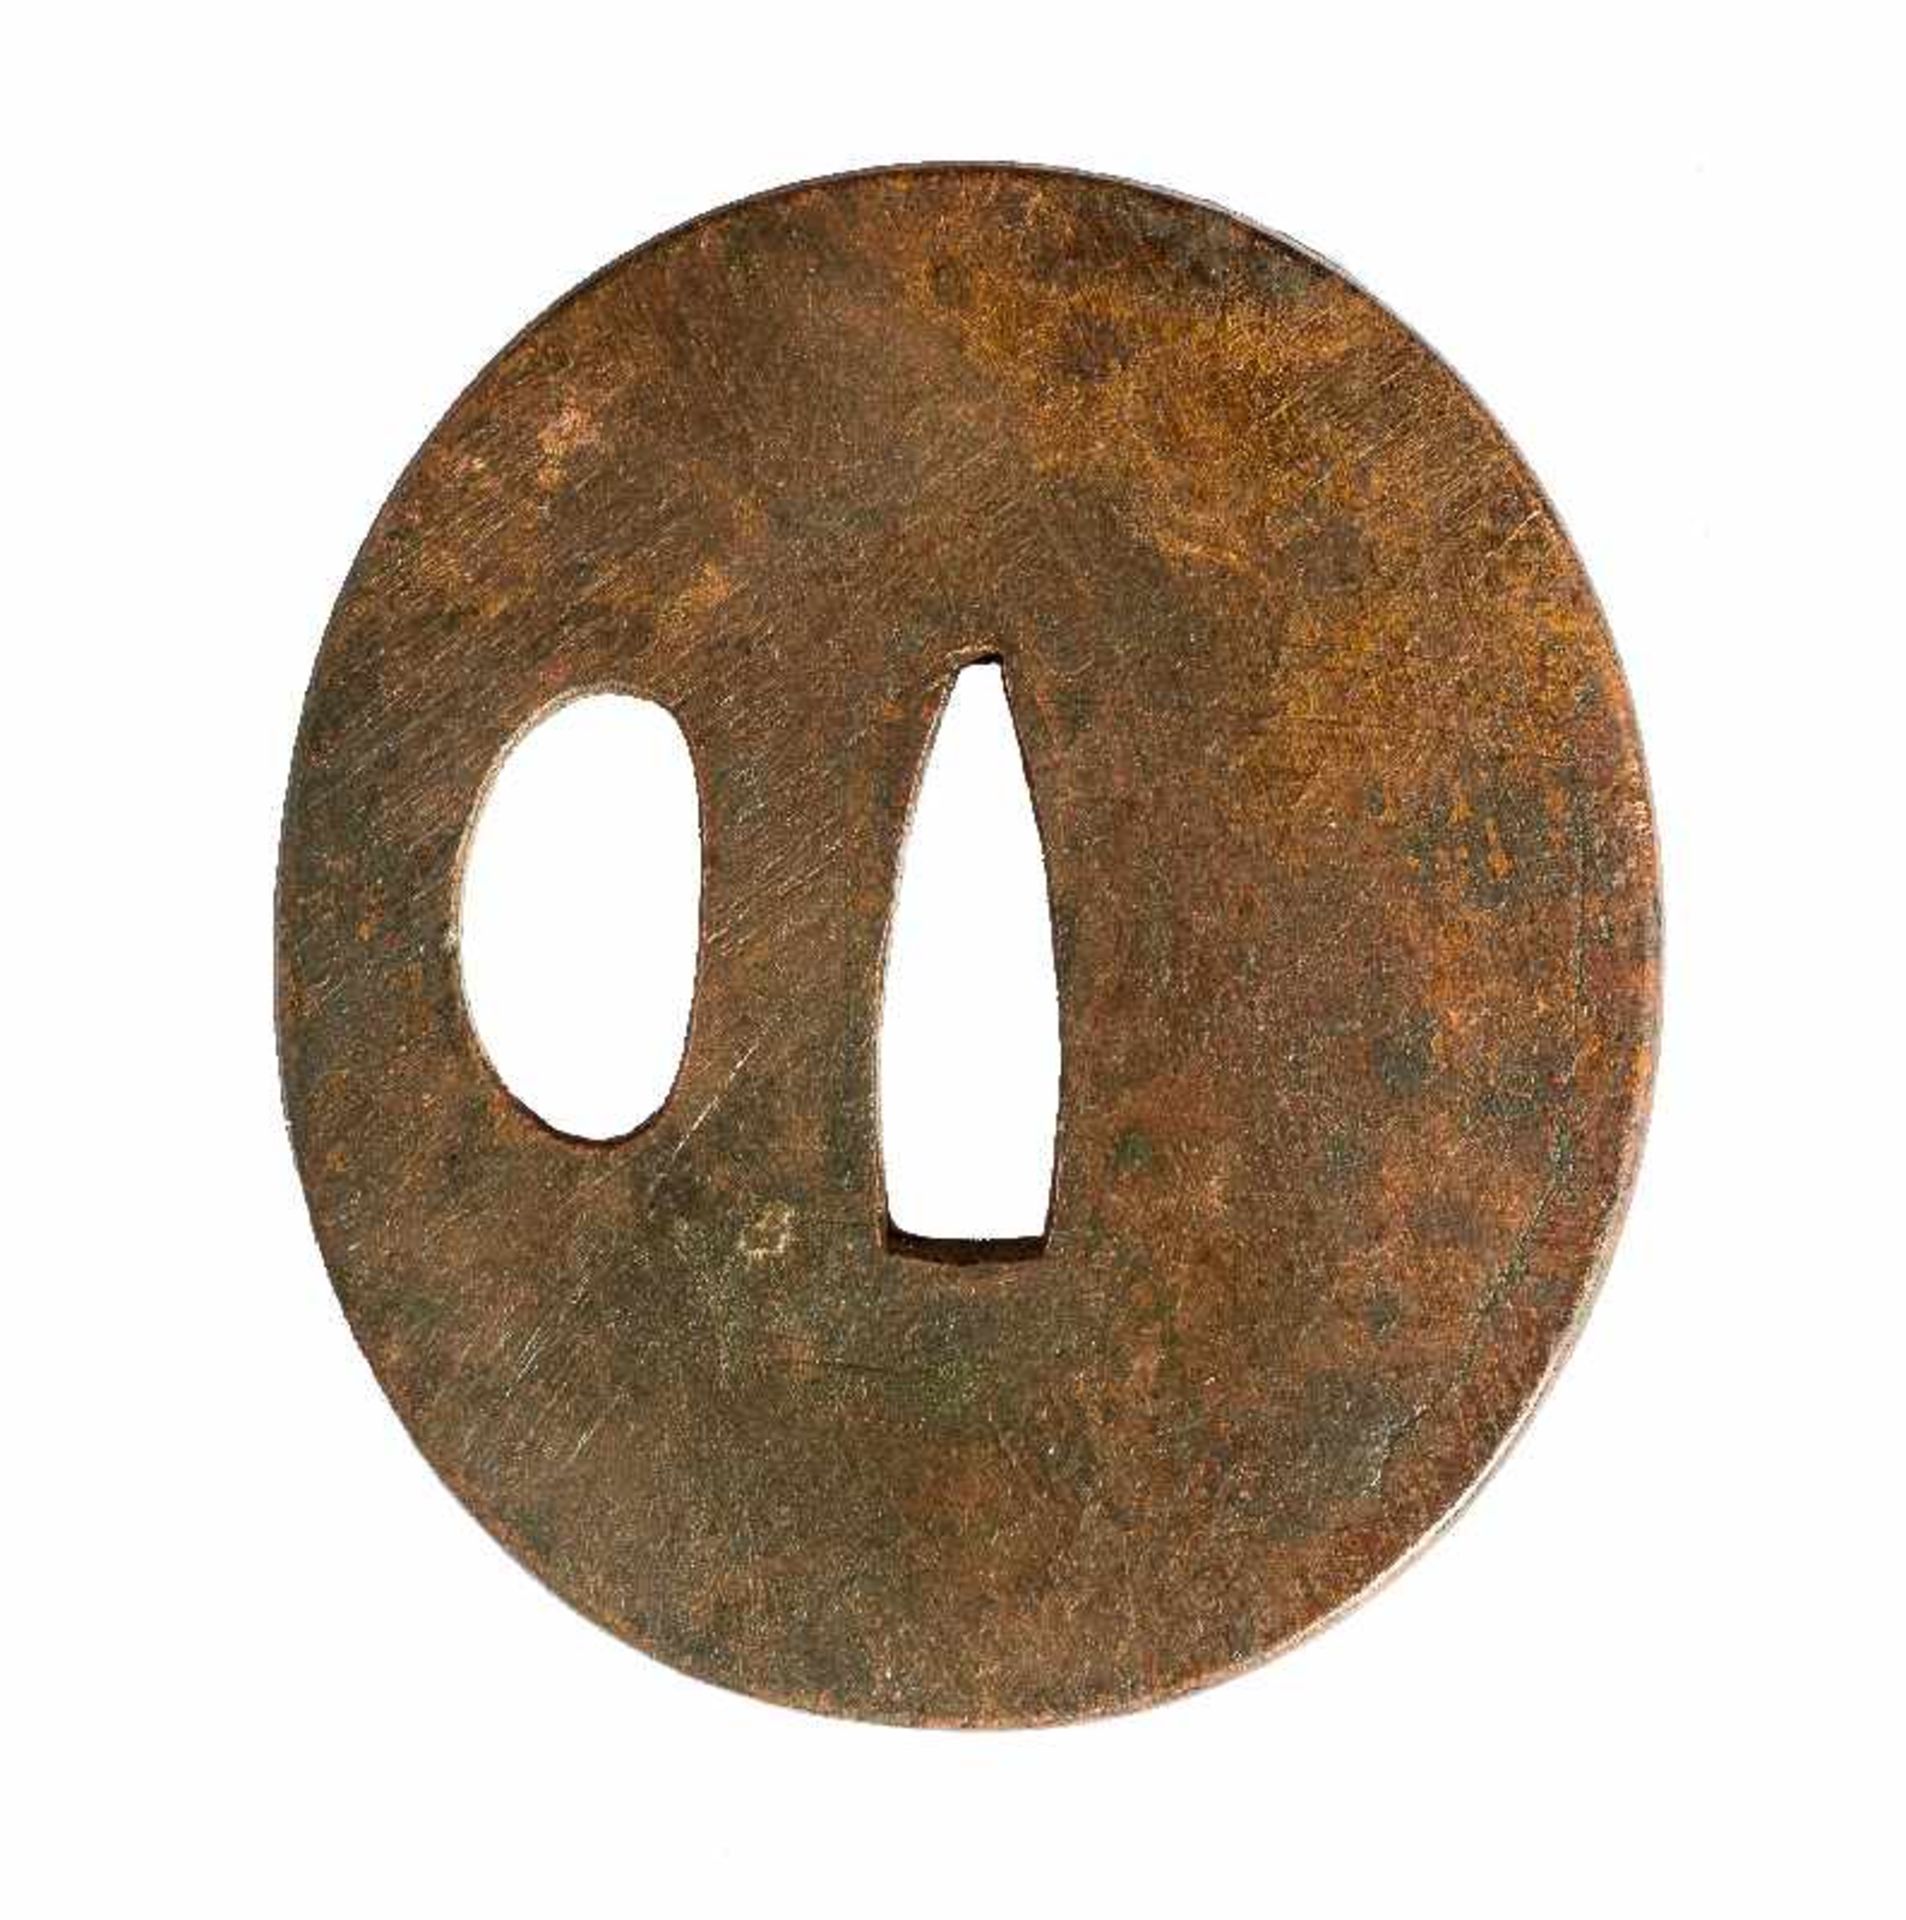 KLEINES TSUBA Kupferlegierung. Japan, 19. Jh. Einfaches, beidseitig flaches Tsuba in ovalrunder Form